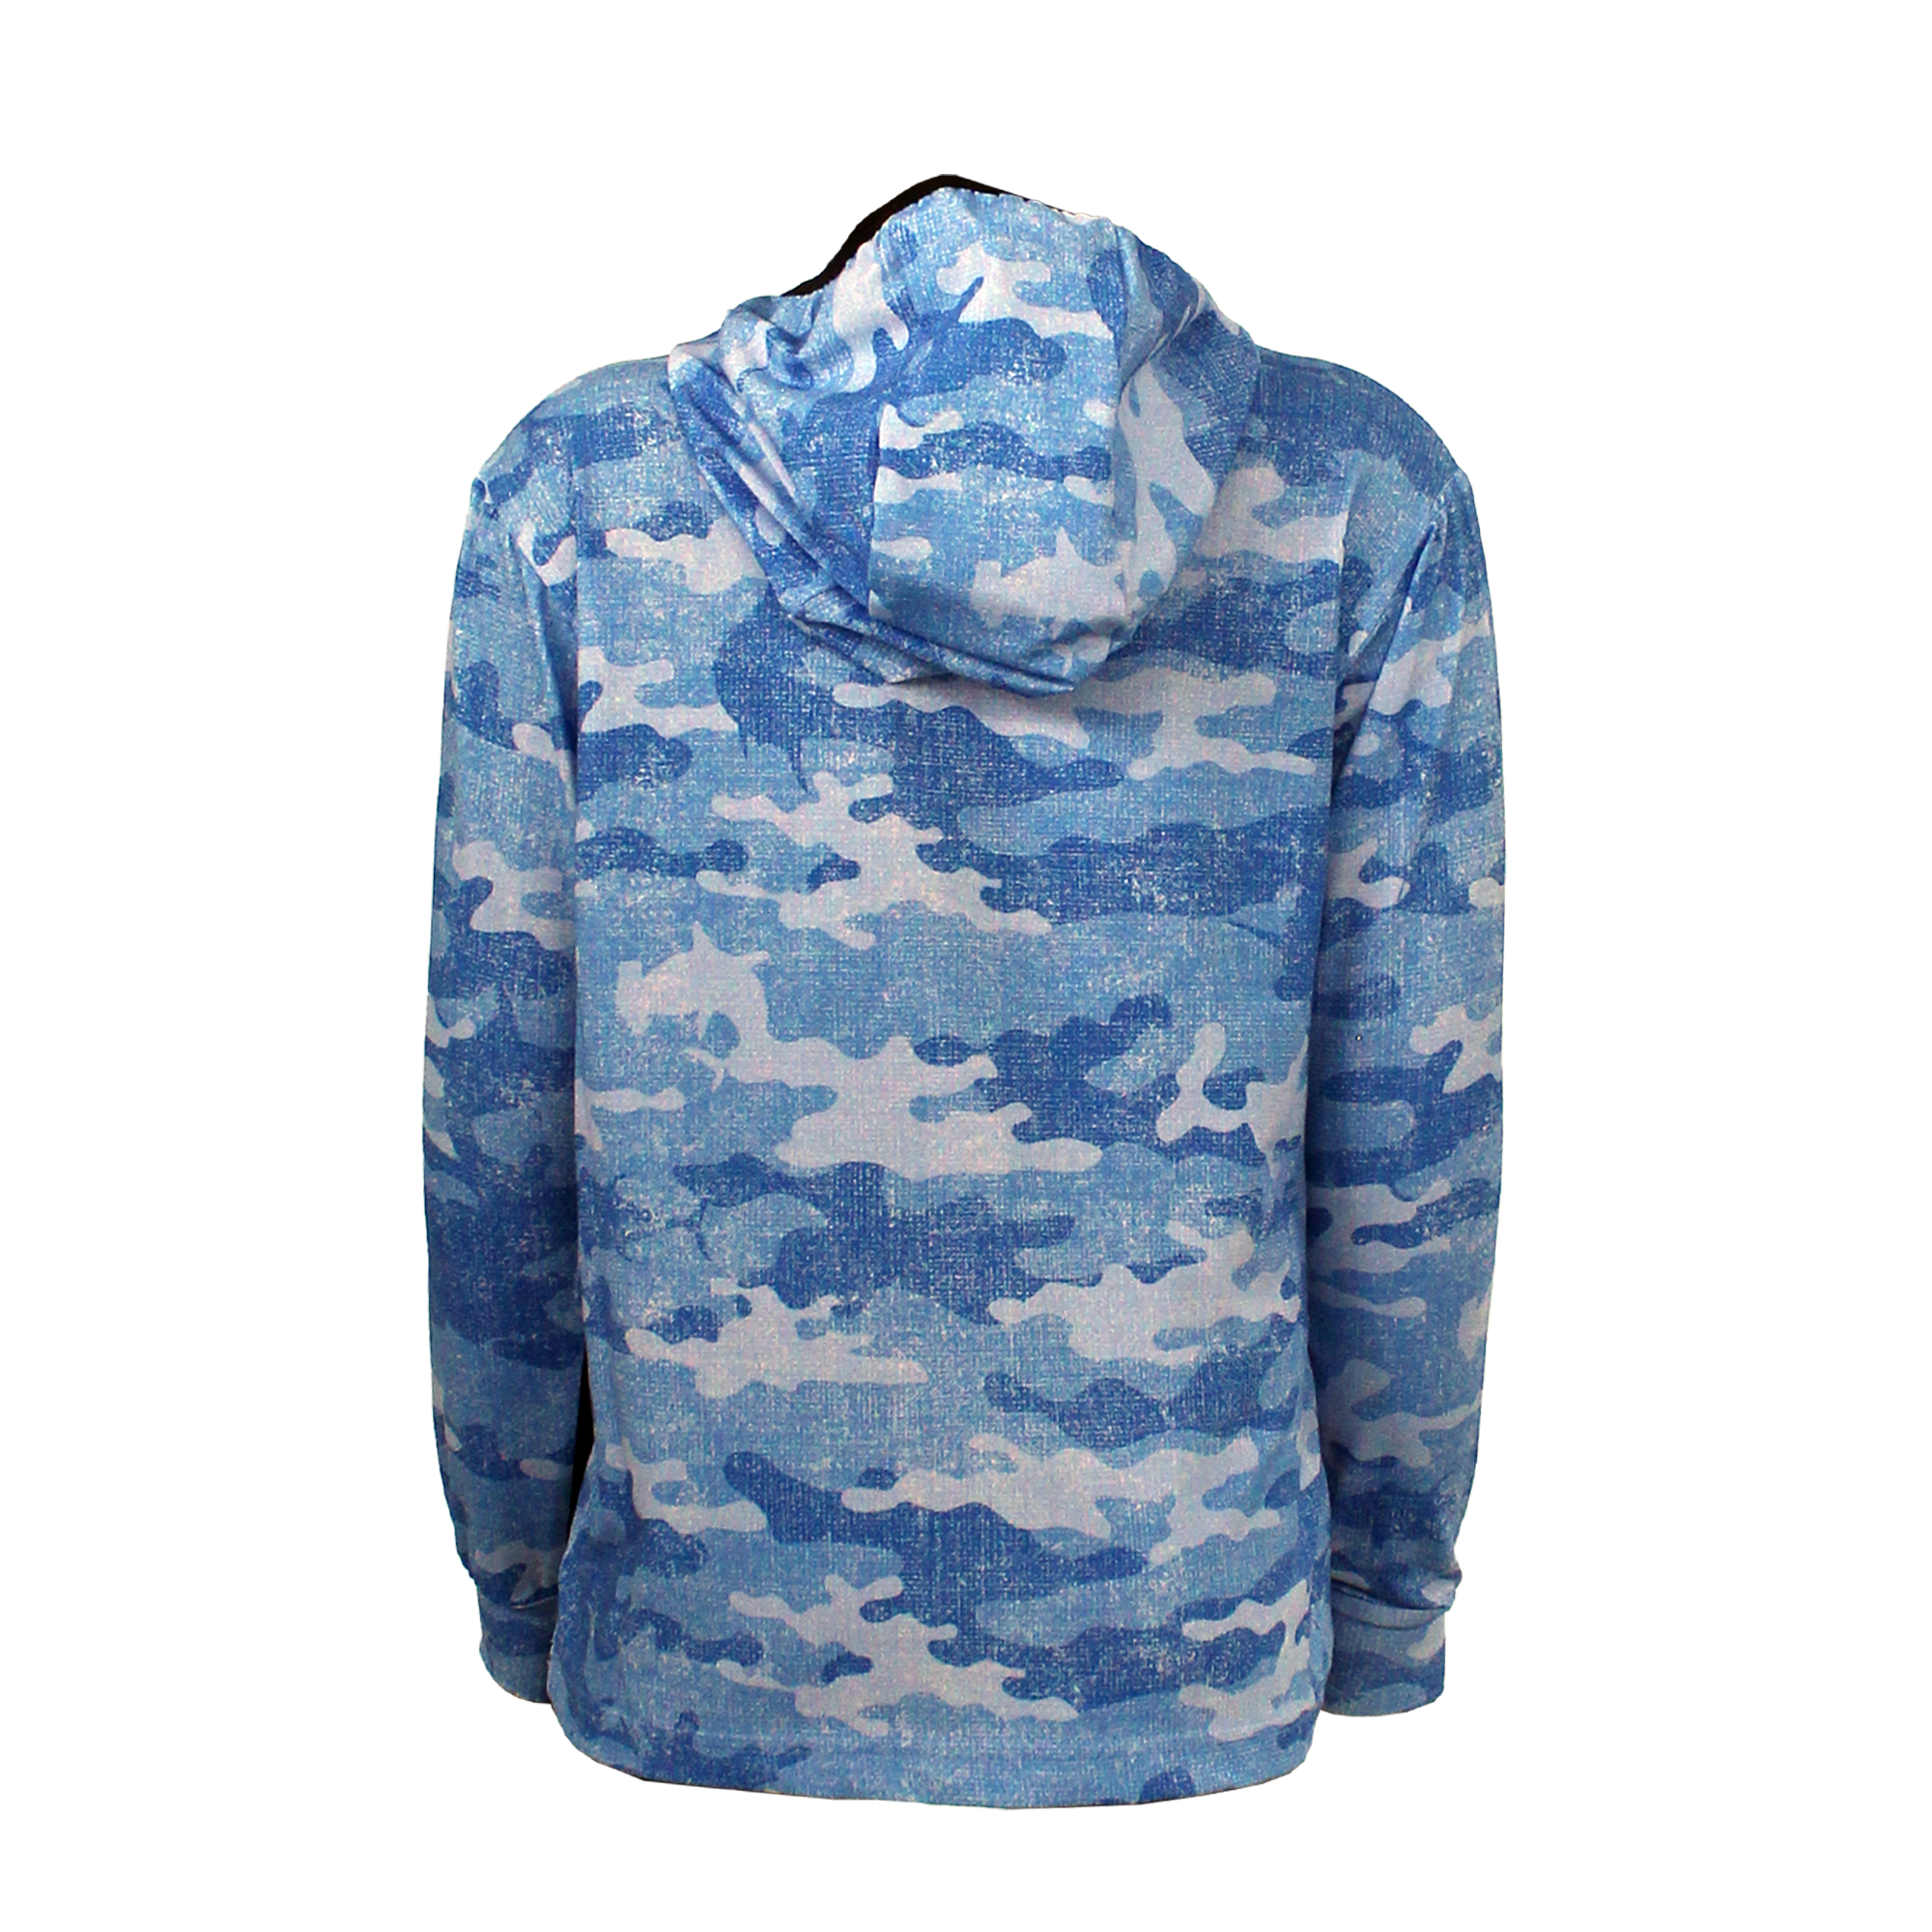 Atlan Jr. Long Sleeve Fishing Shirt - Camo - Blue